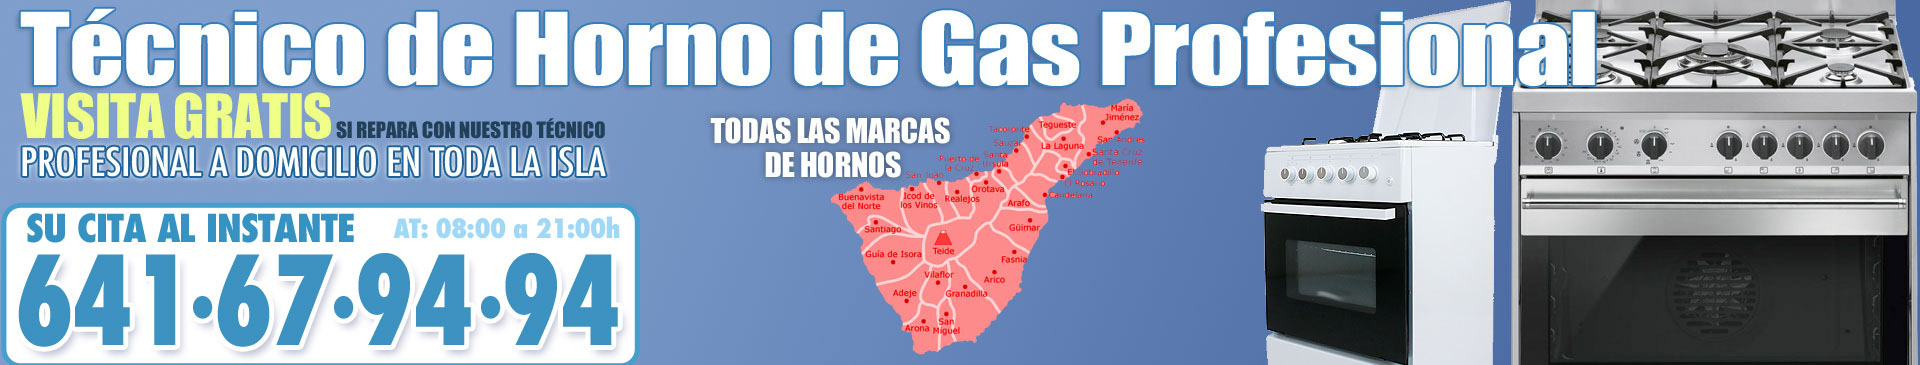 Servicio Técnico de Horno de Gas en Tenerife